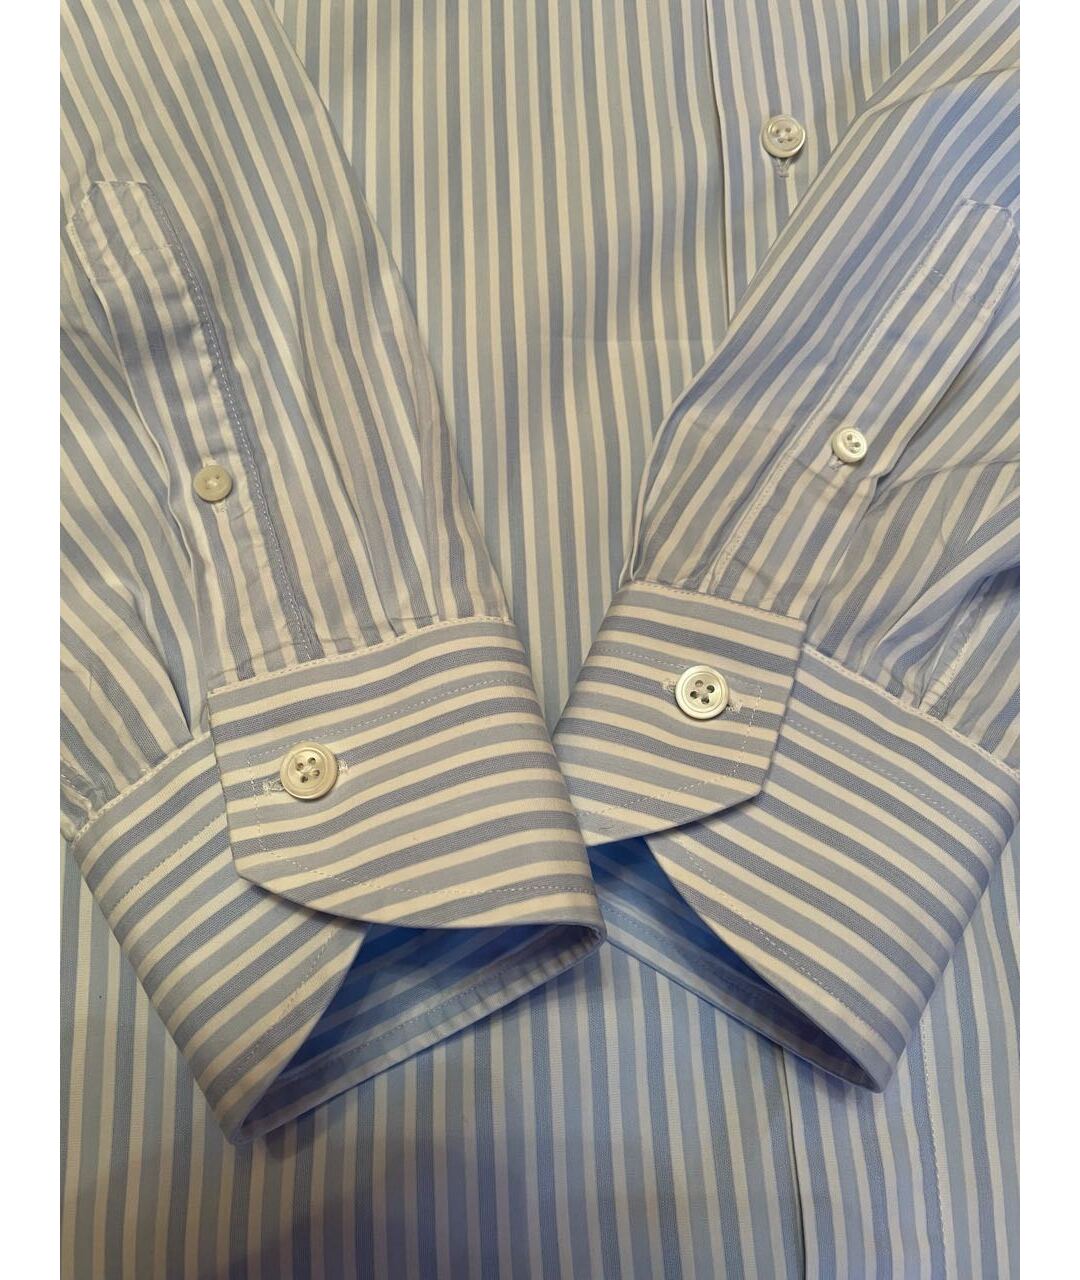 CANALI Голубая хлопковая классическая рубашка, фото 3